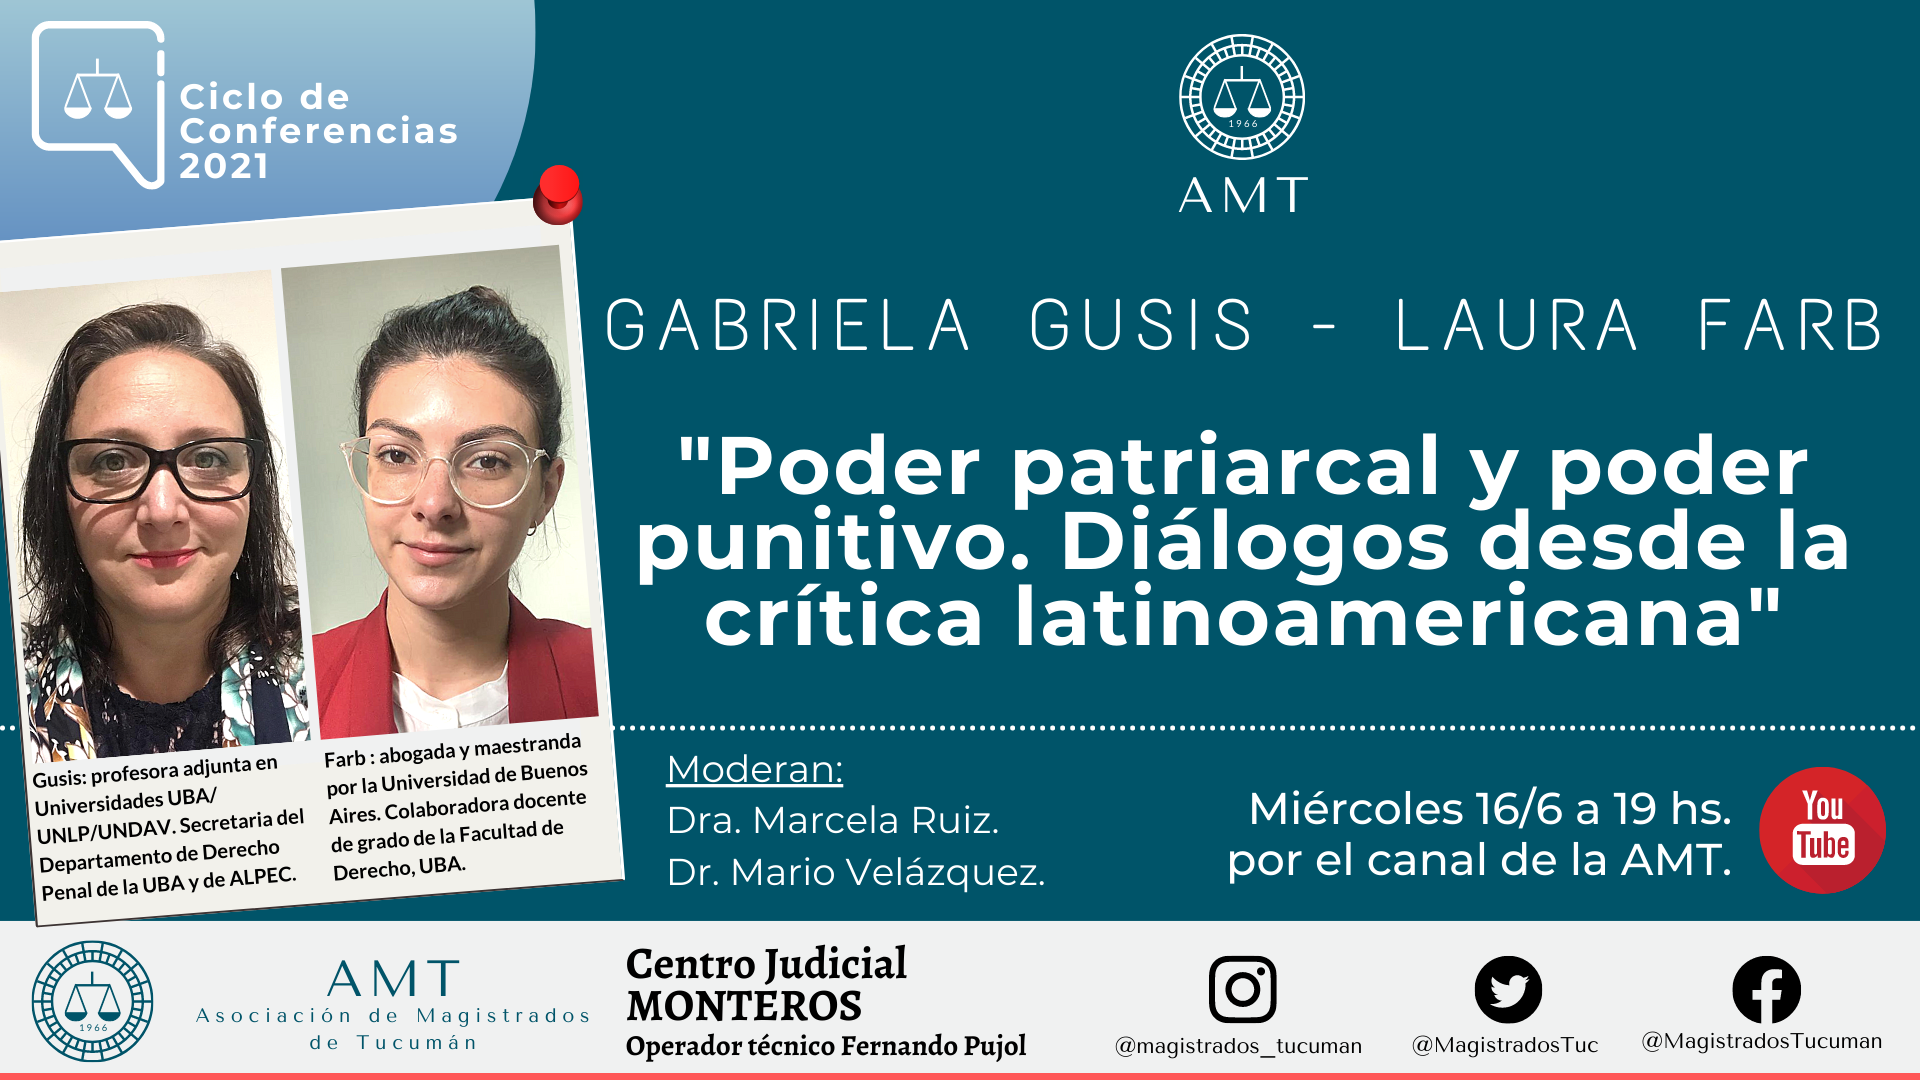 Vuelva a ver la conferencia de Gabriela Gusis y Laura Farb «Poder patriarcal y poder punitivo»